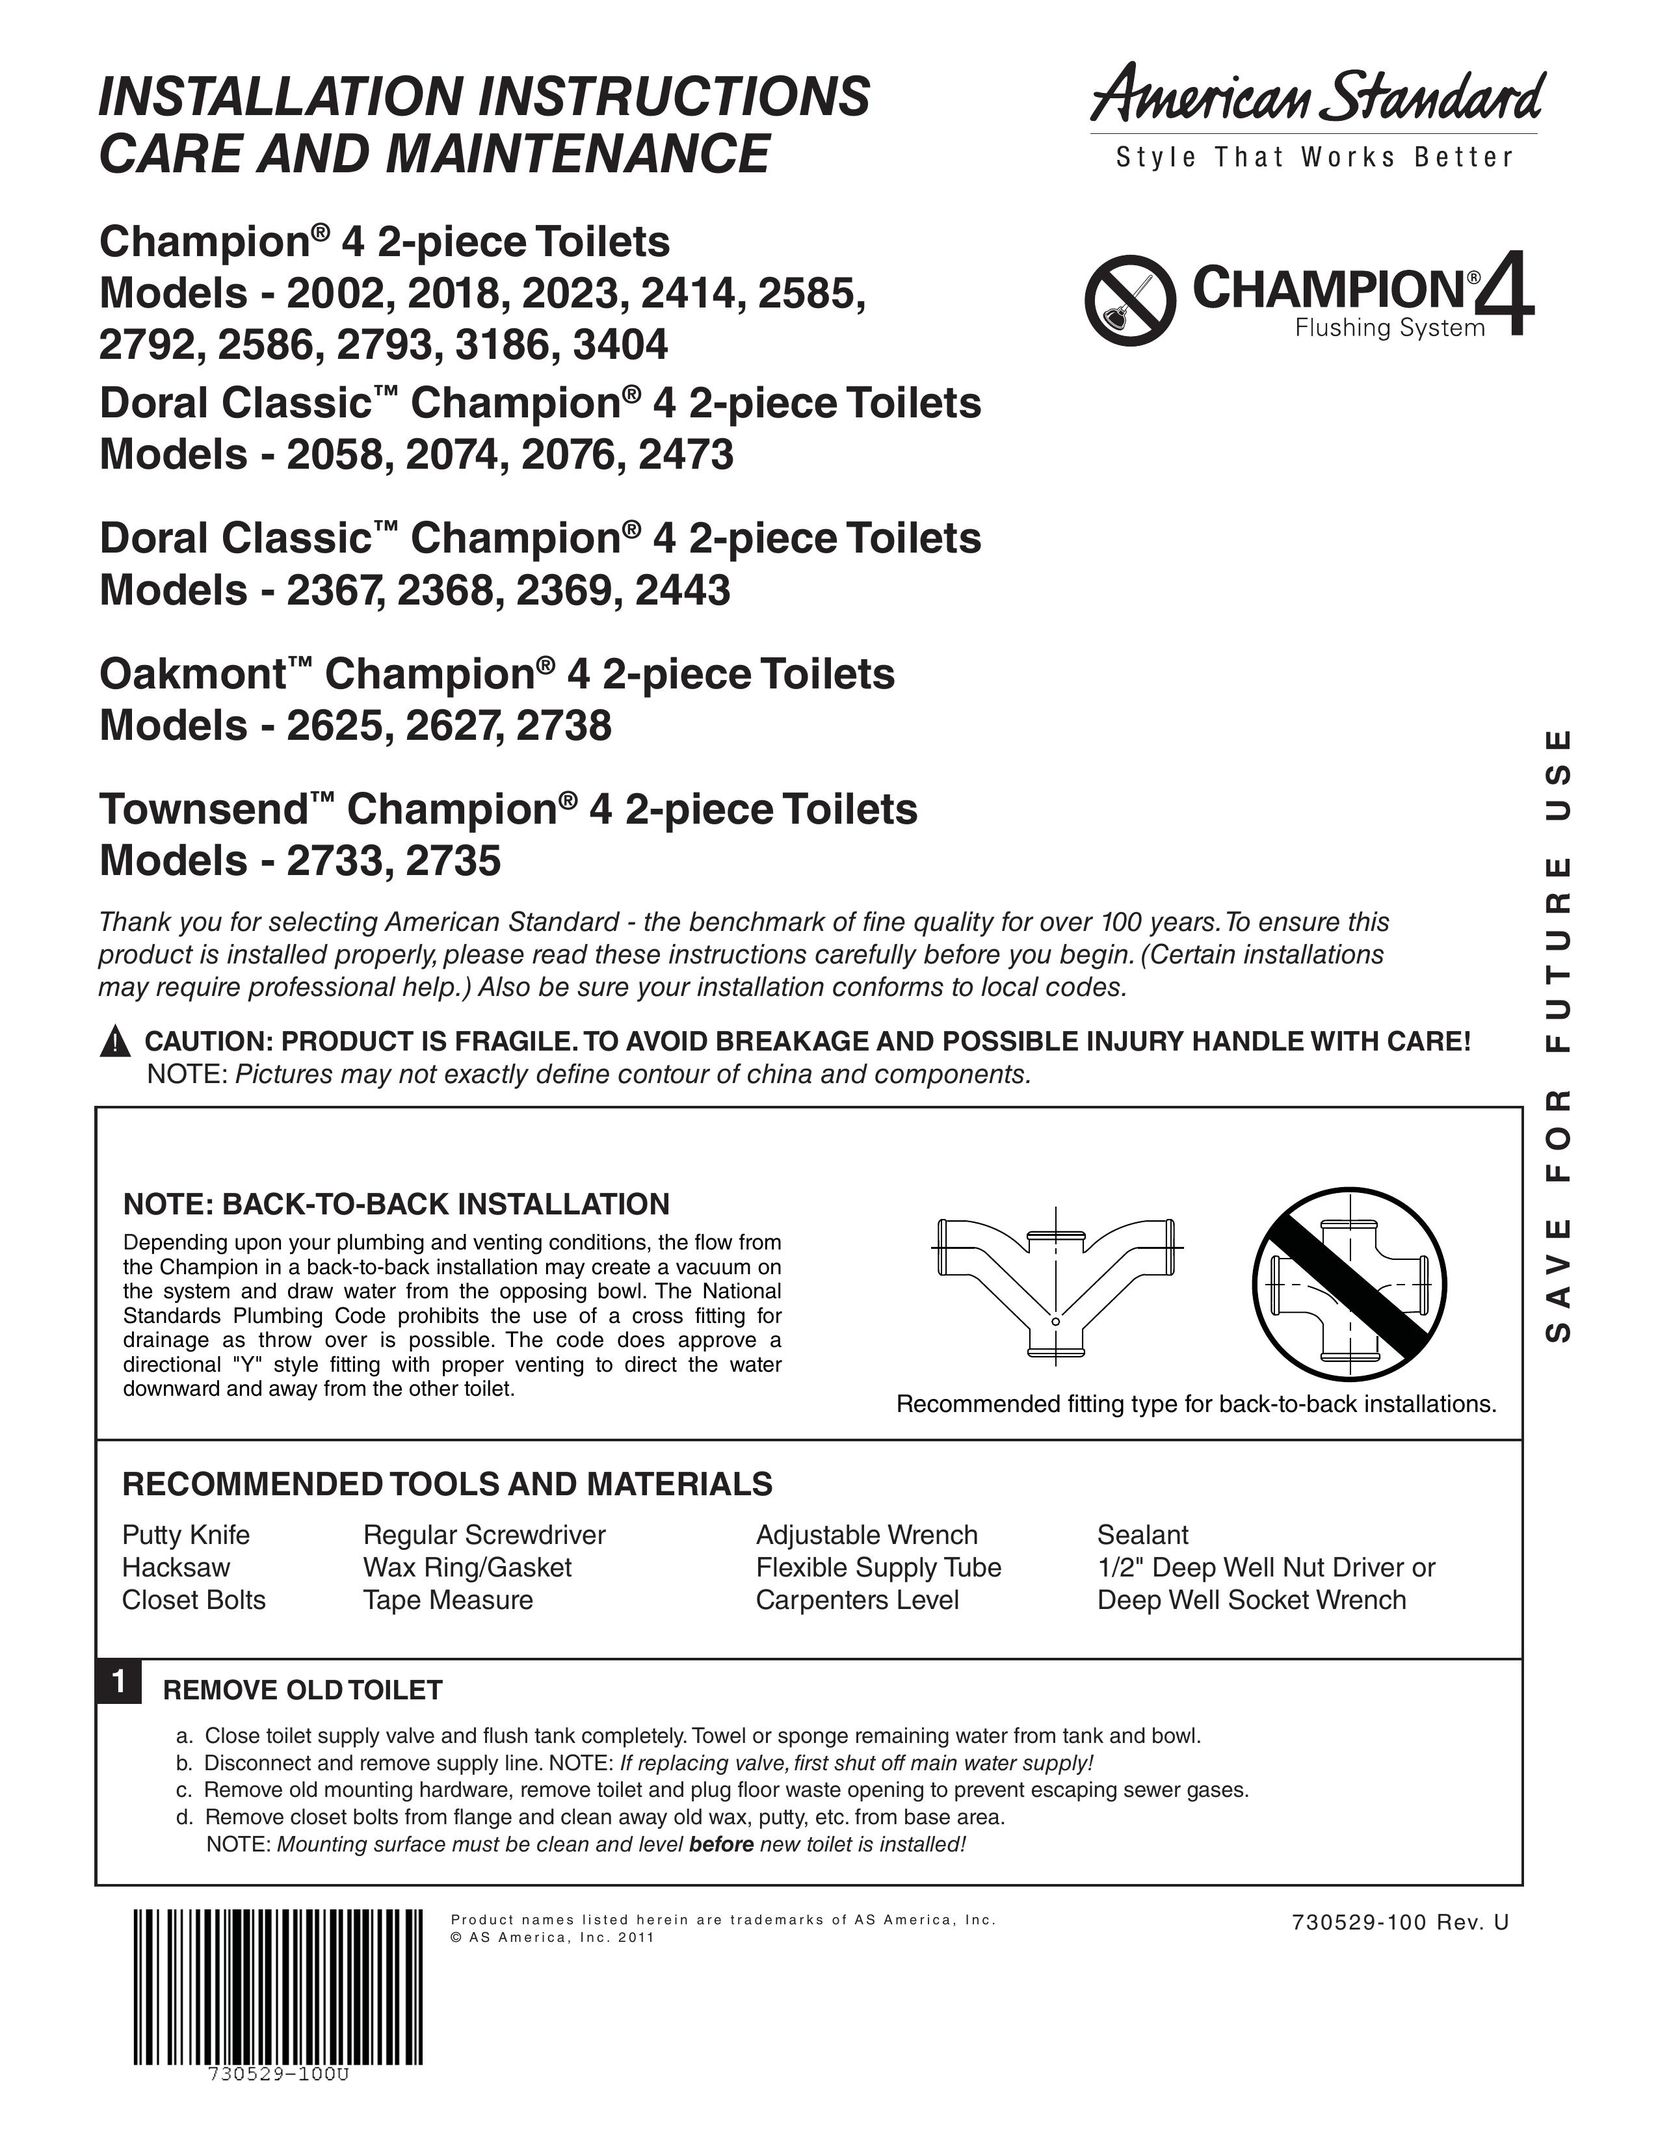 American Standard 2368 Plumbing Product User Manual